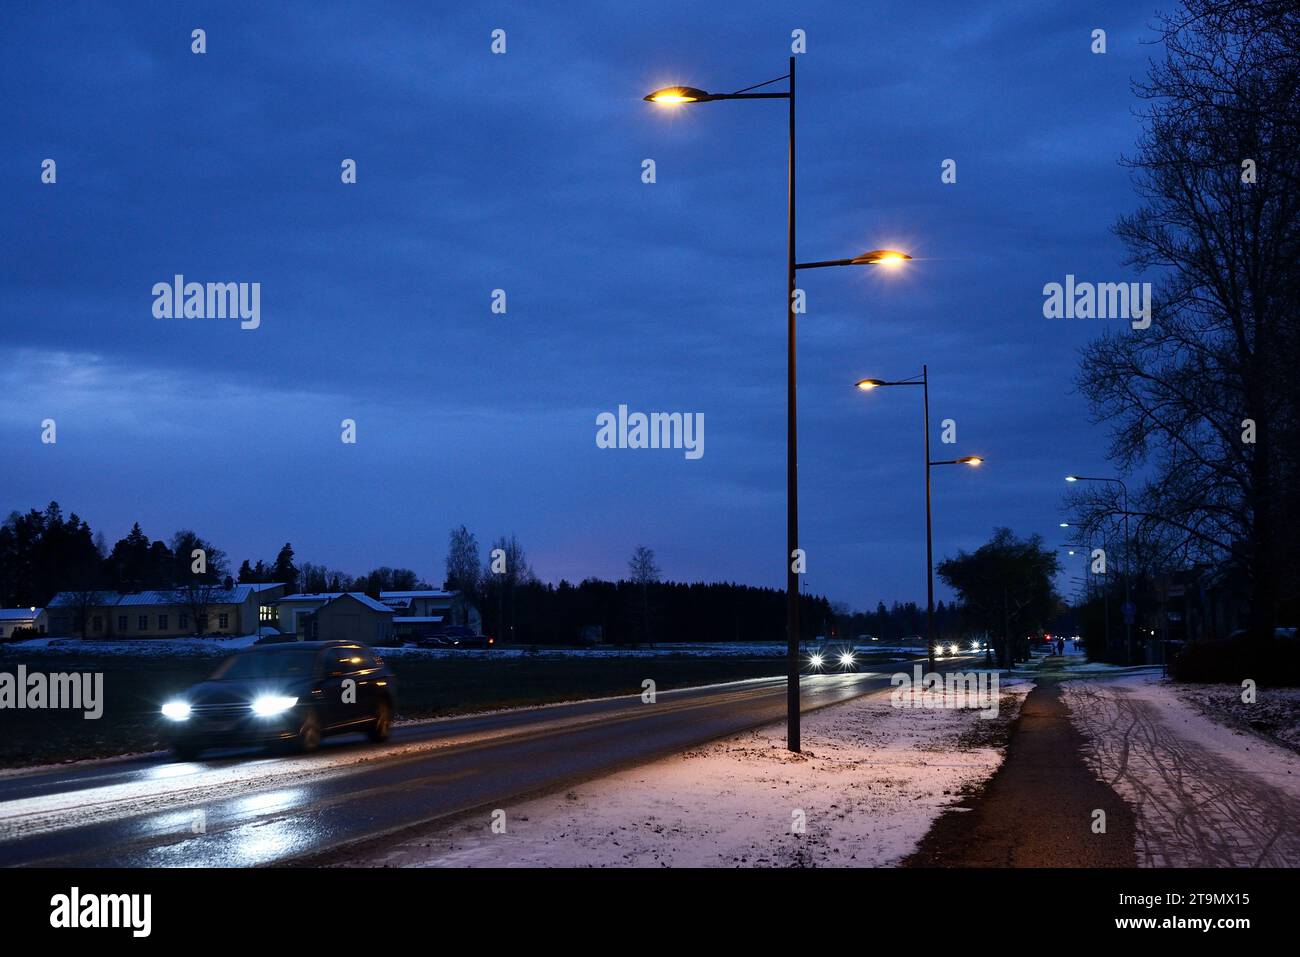 Nachtverkehr von Autos auf der Straße in einer finnischen Kleinstadt im Winter Stockfoto